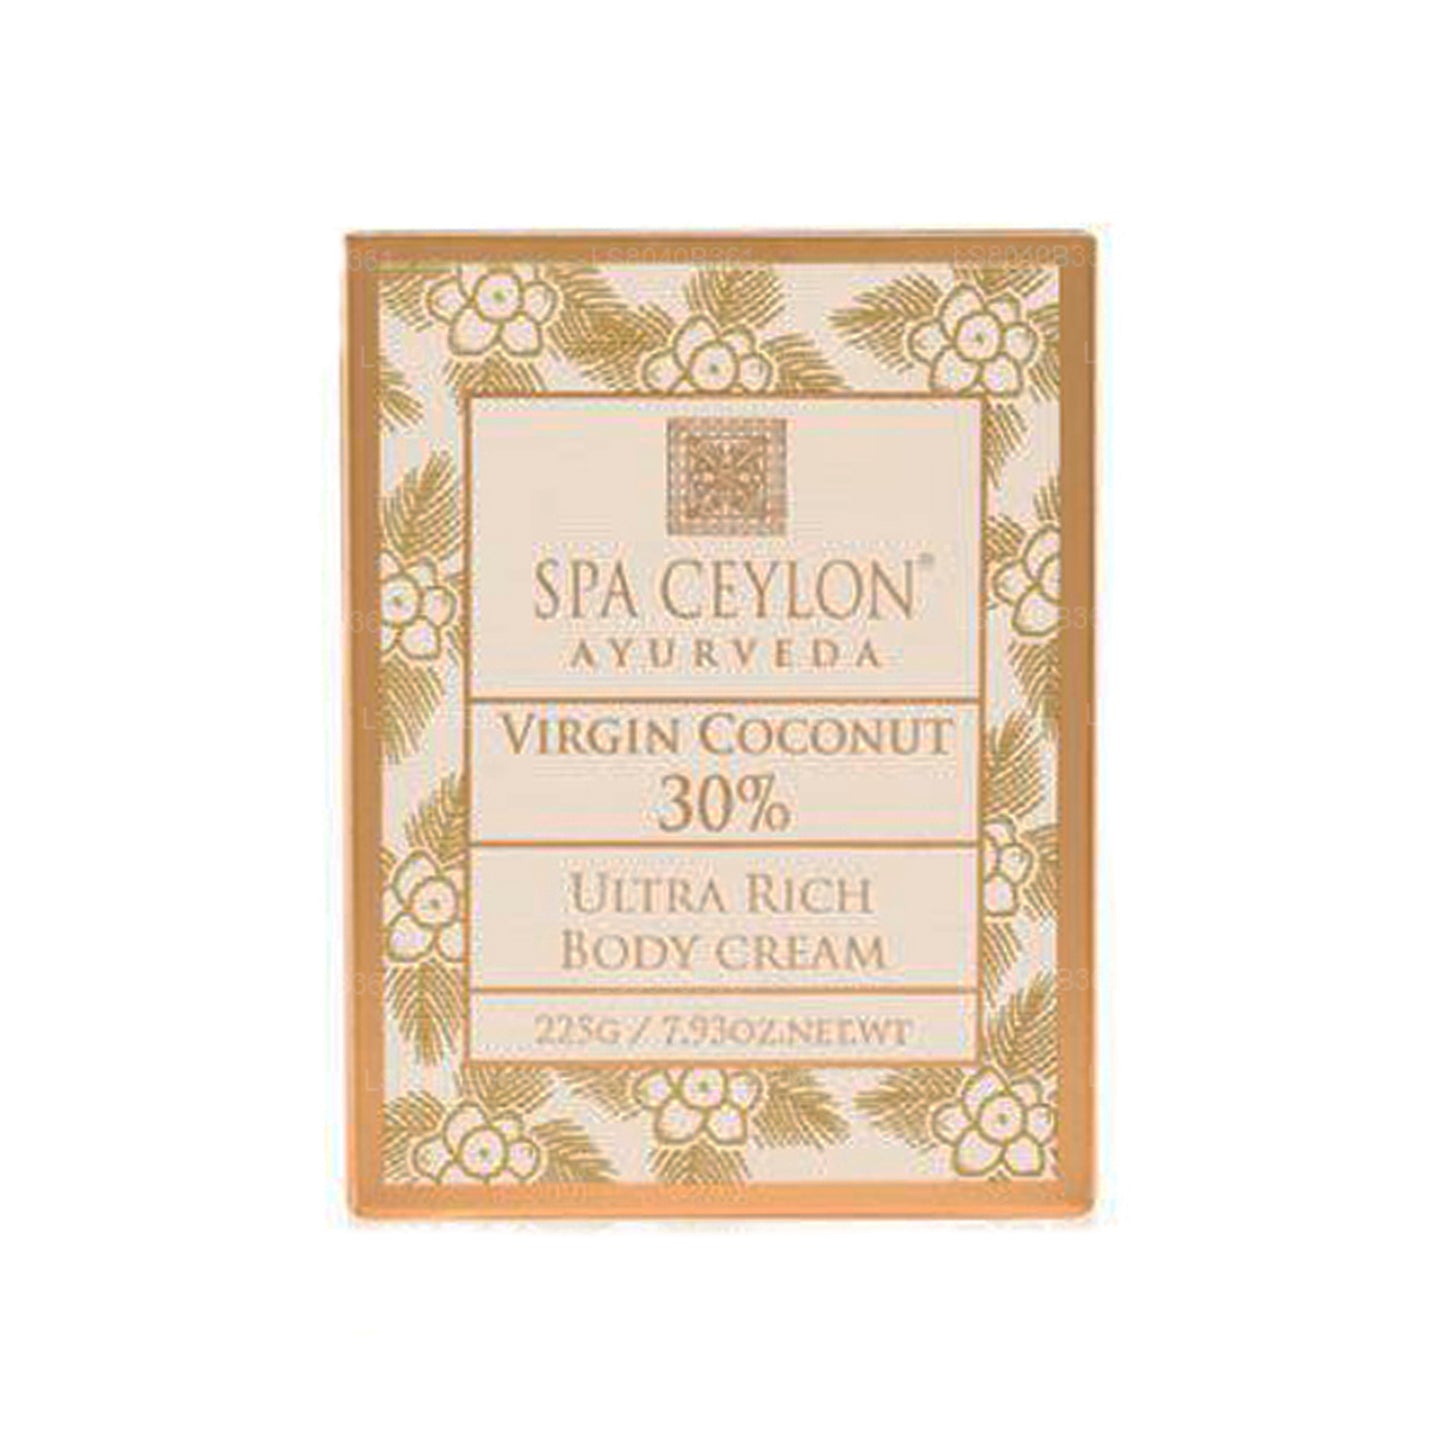 Spa Ceylon Virgin Coconut 30% - Crema corpo ultra ricca (200 g)